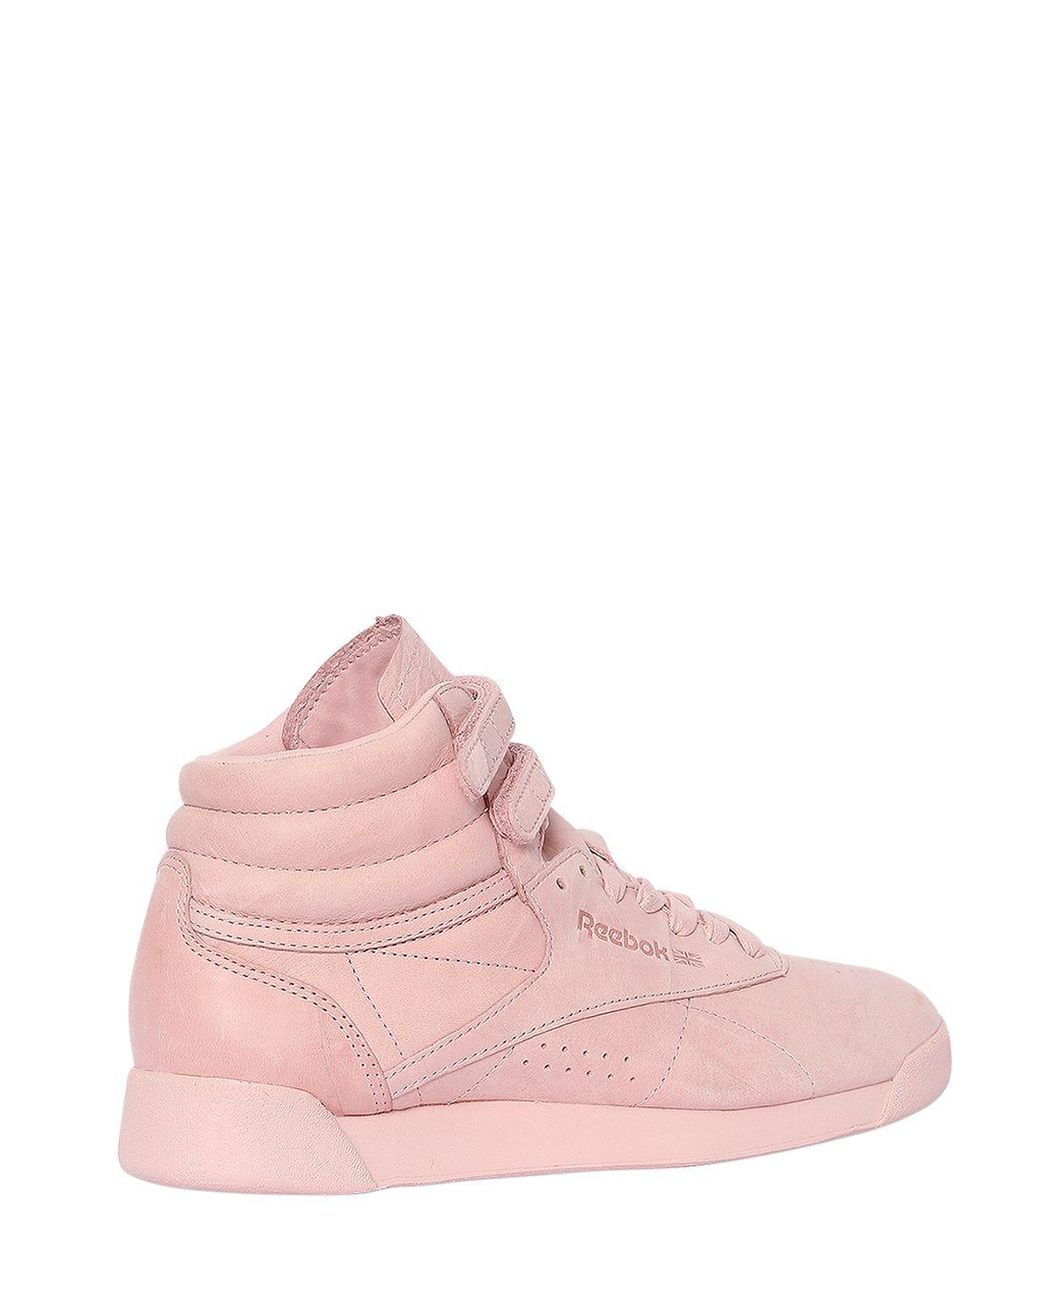 Reebok Freestyle Nubuck High Top Sneakers in Pink | Lyst